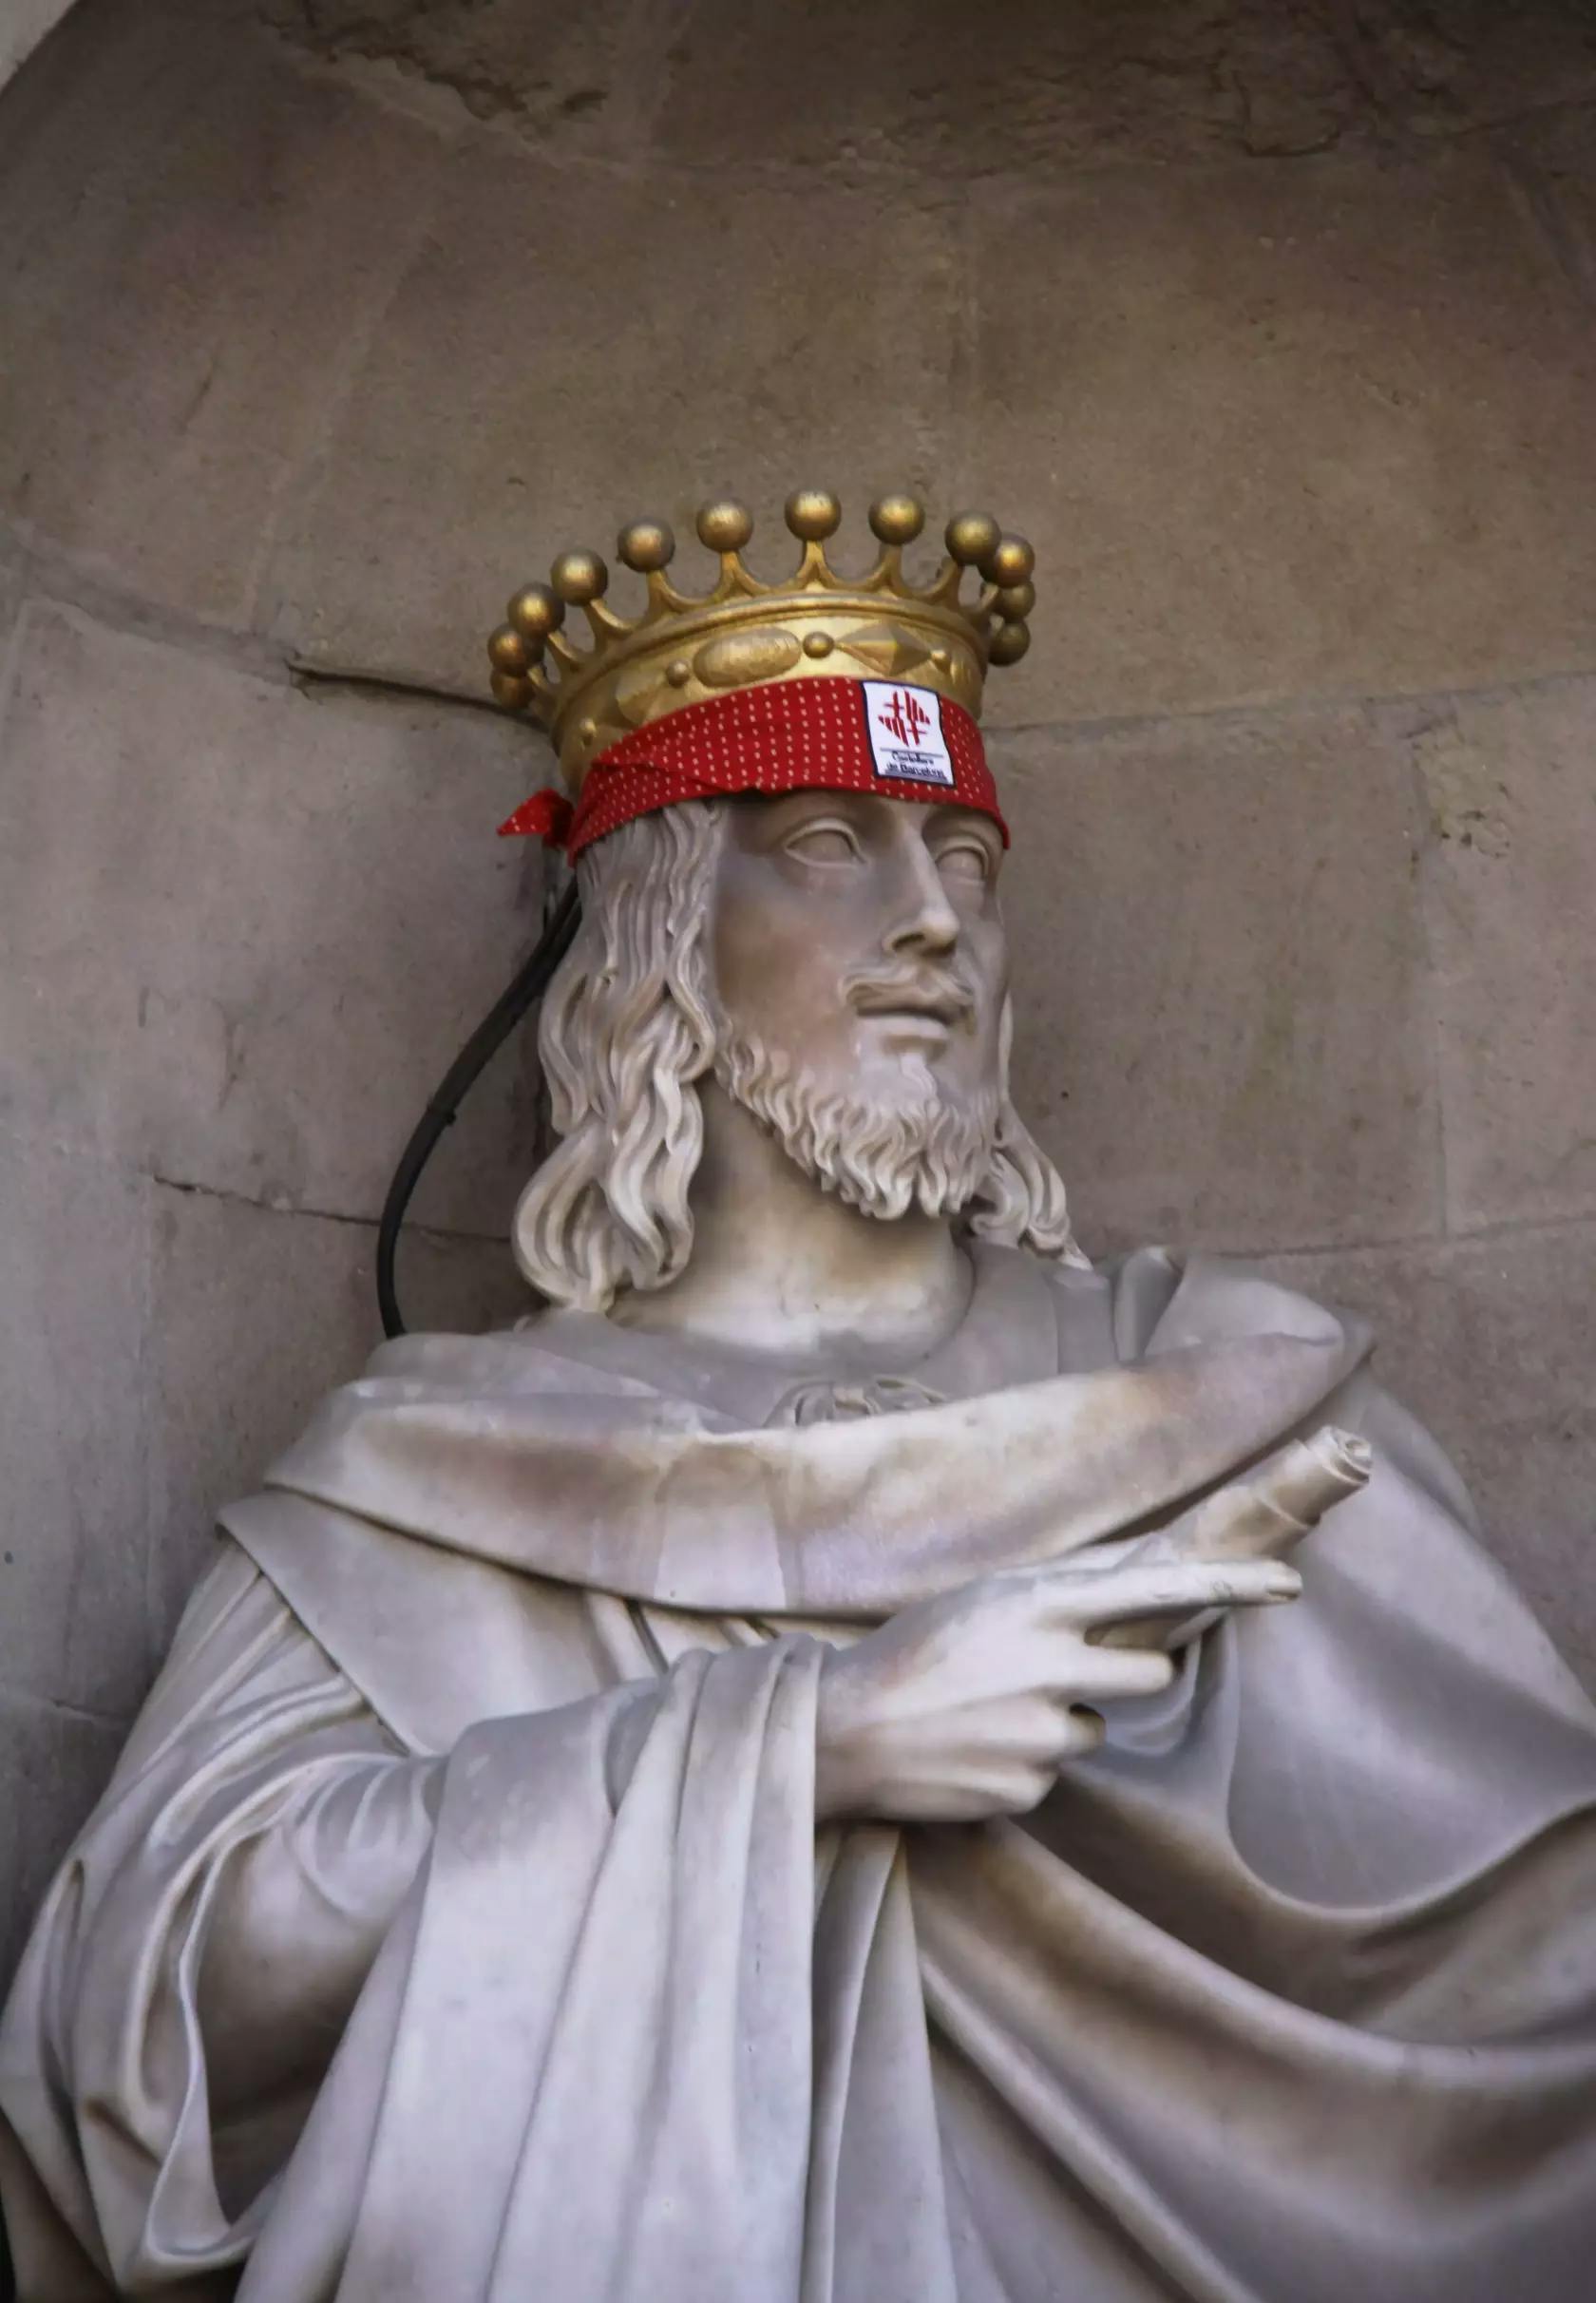 Lo Rei Jaume, casteller de Barcelona